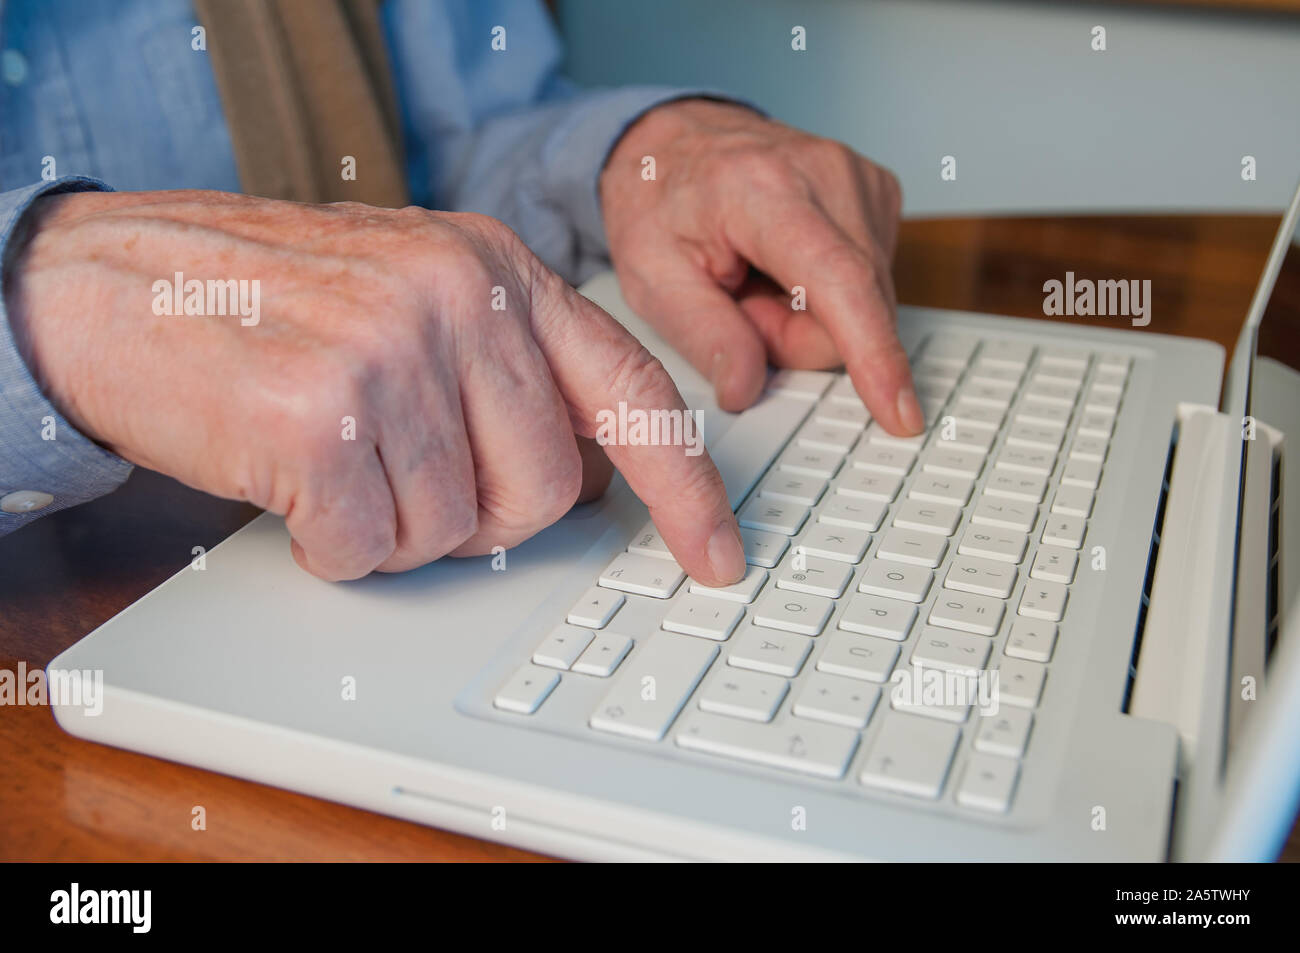 Les mains de la saisie sur clavier d'ordinateur portable Banque D'Images